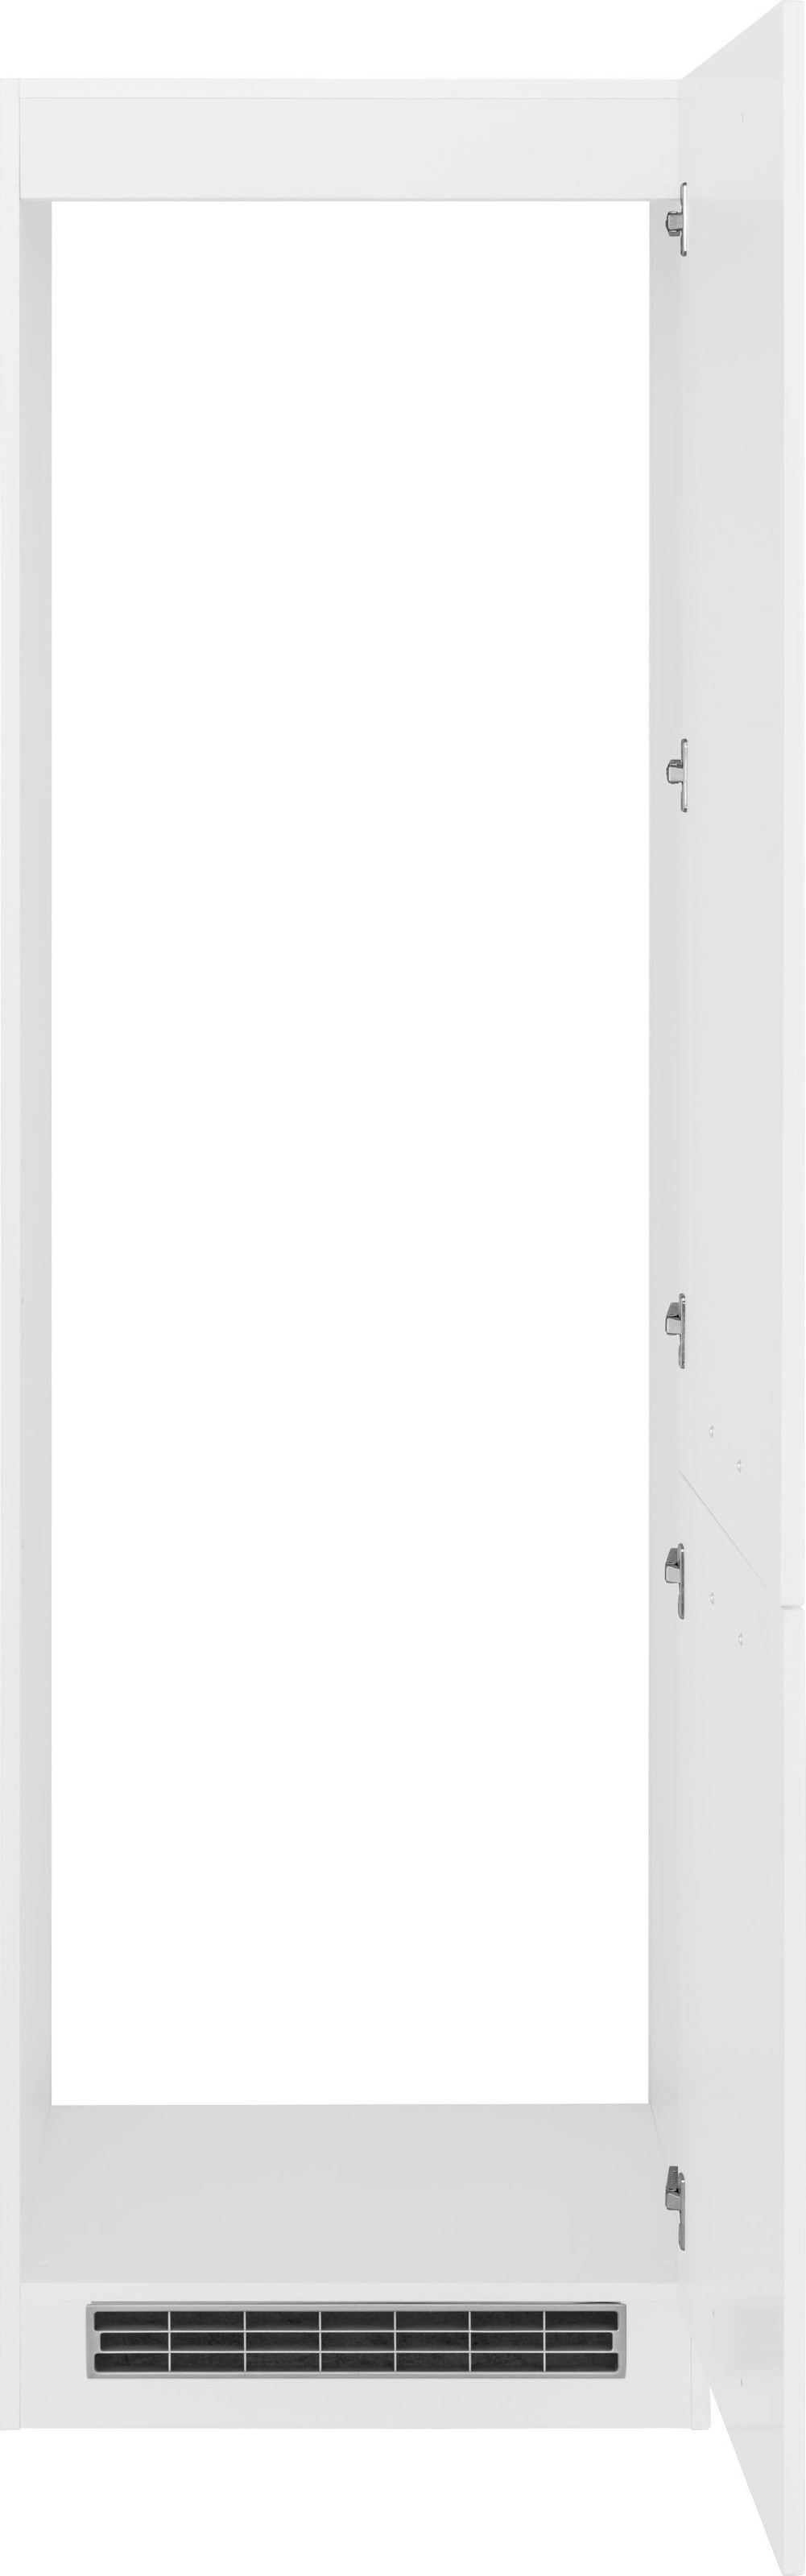 HELD MÖBEL Kühlumbauschrank »Visby«, für großen Kühlschrank oder Kühl/Gefrierkombi, Nischenmaß 178 cm